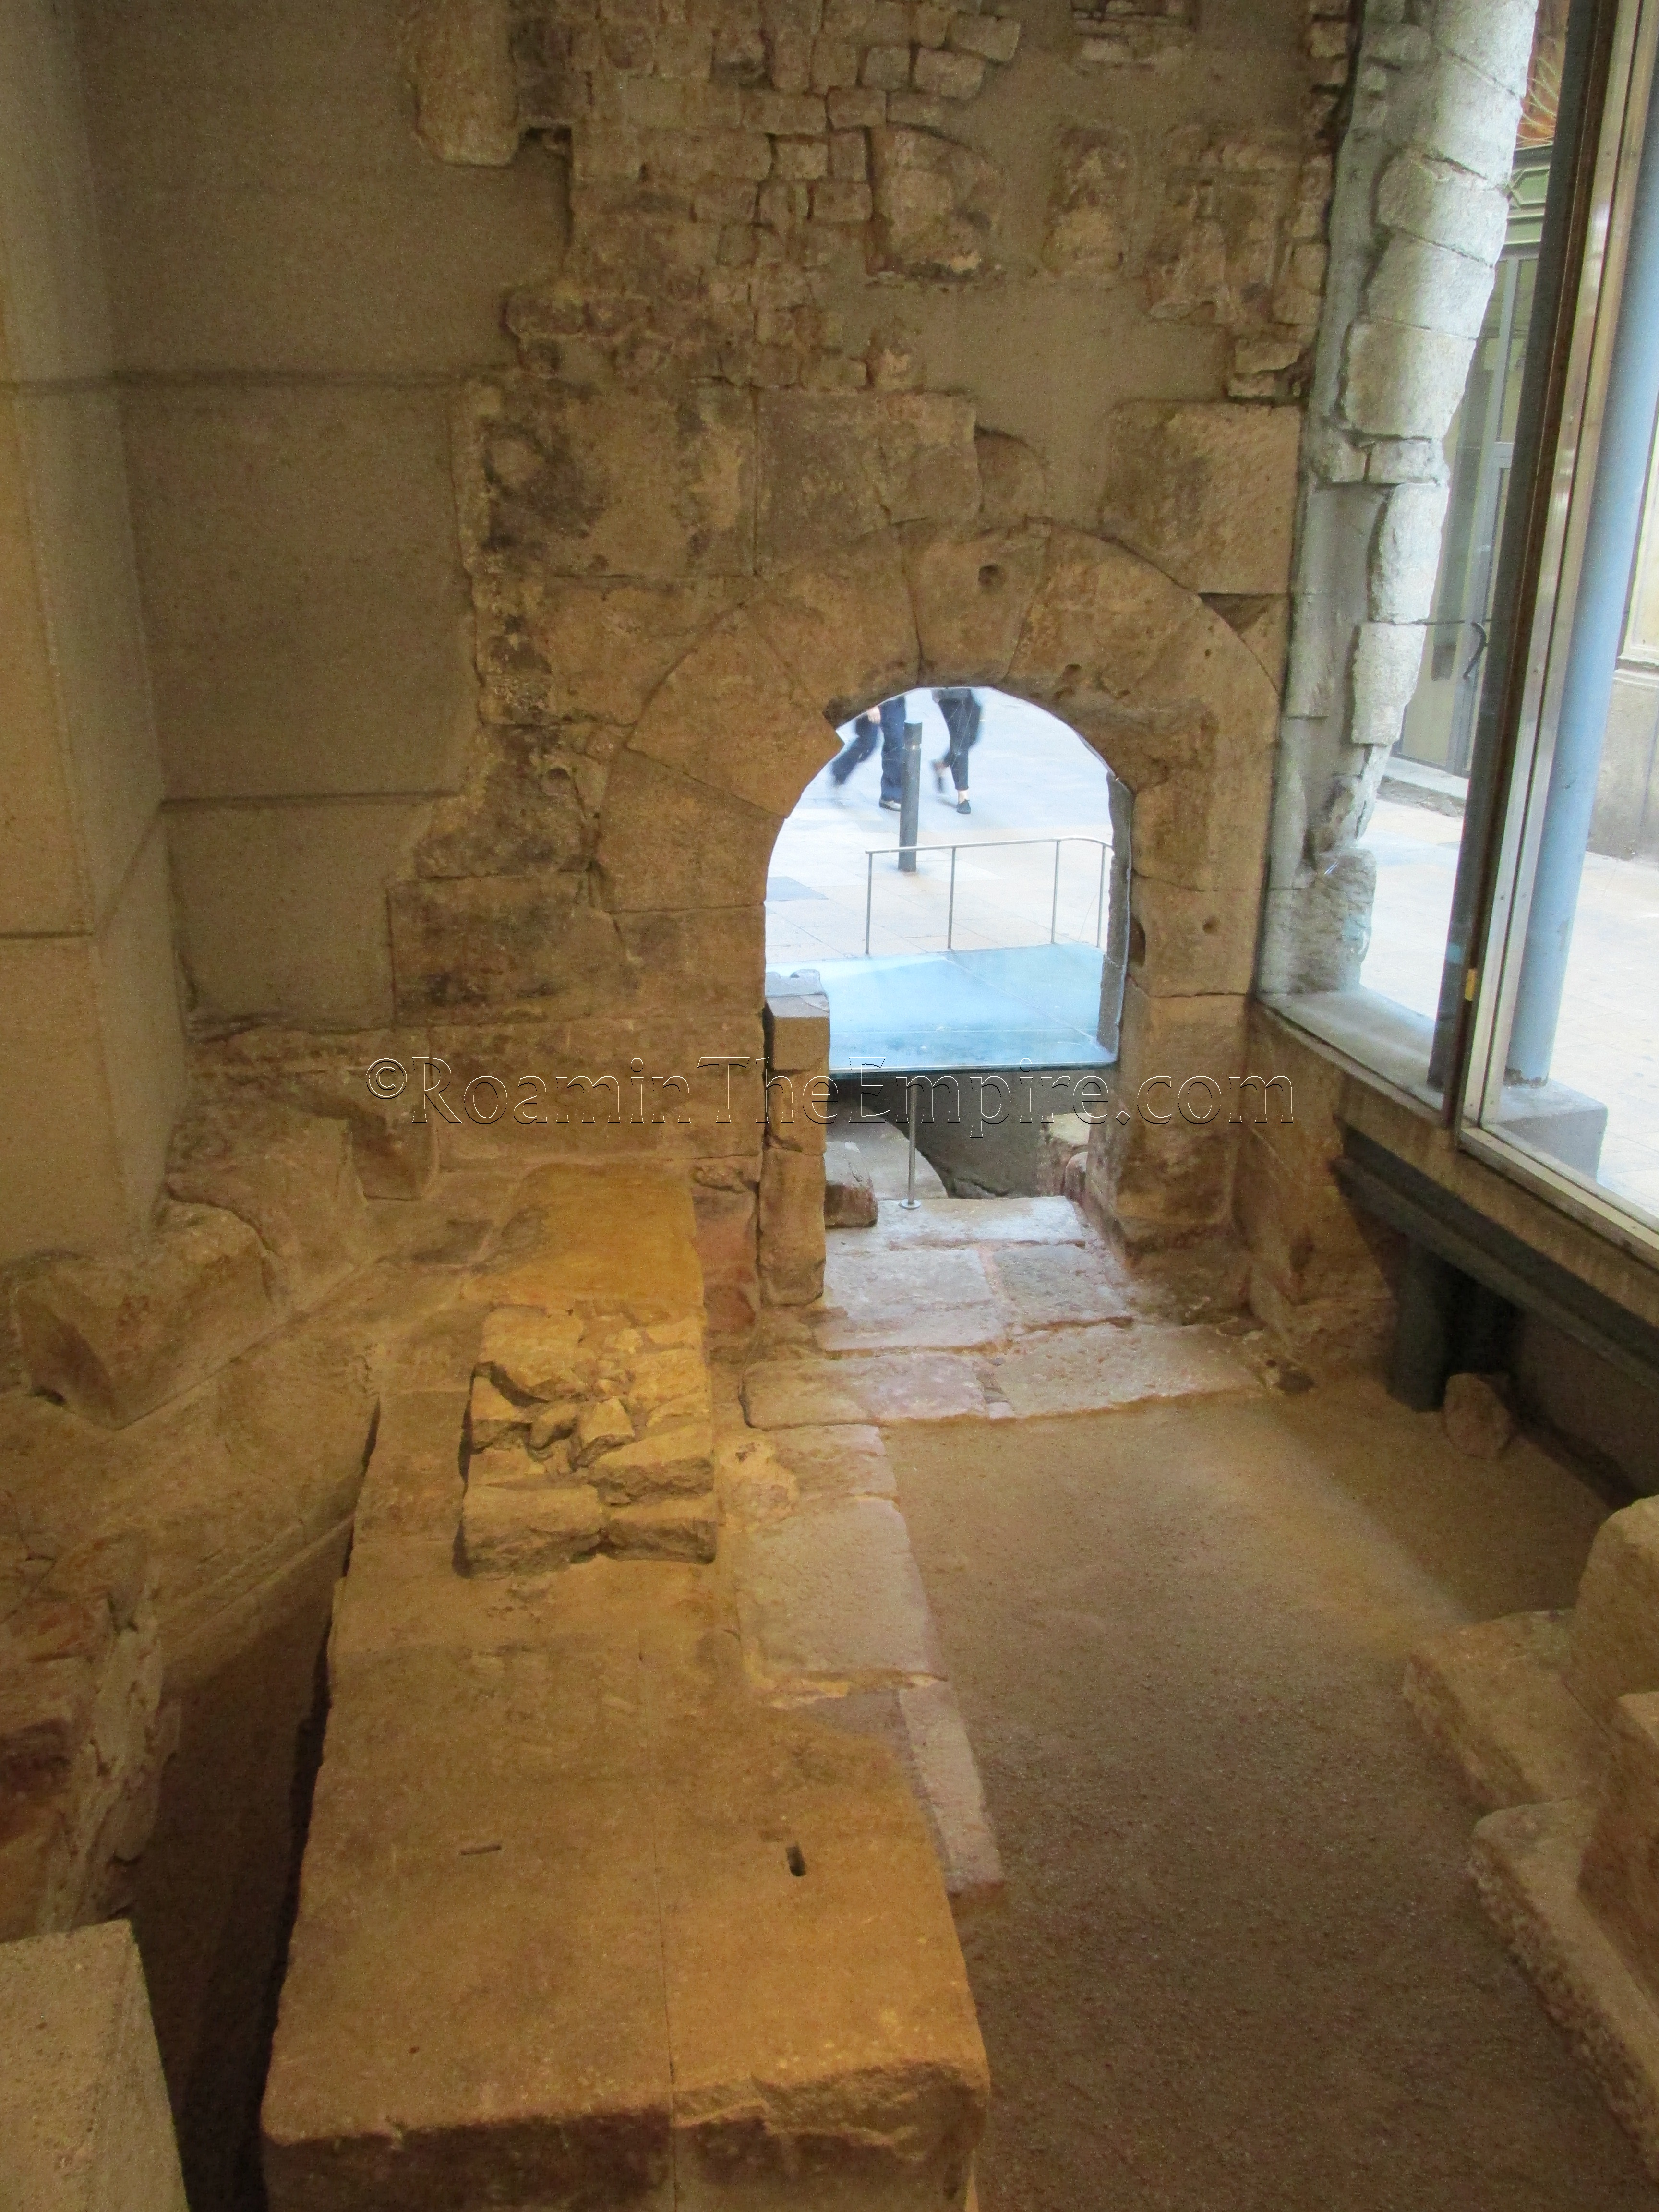 Interior of the Porta de Mar.